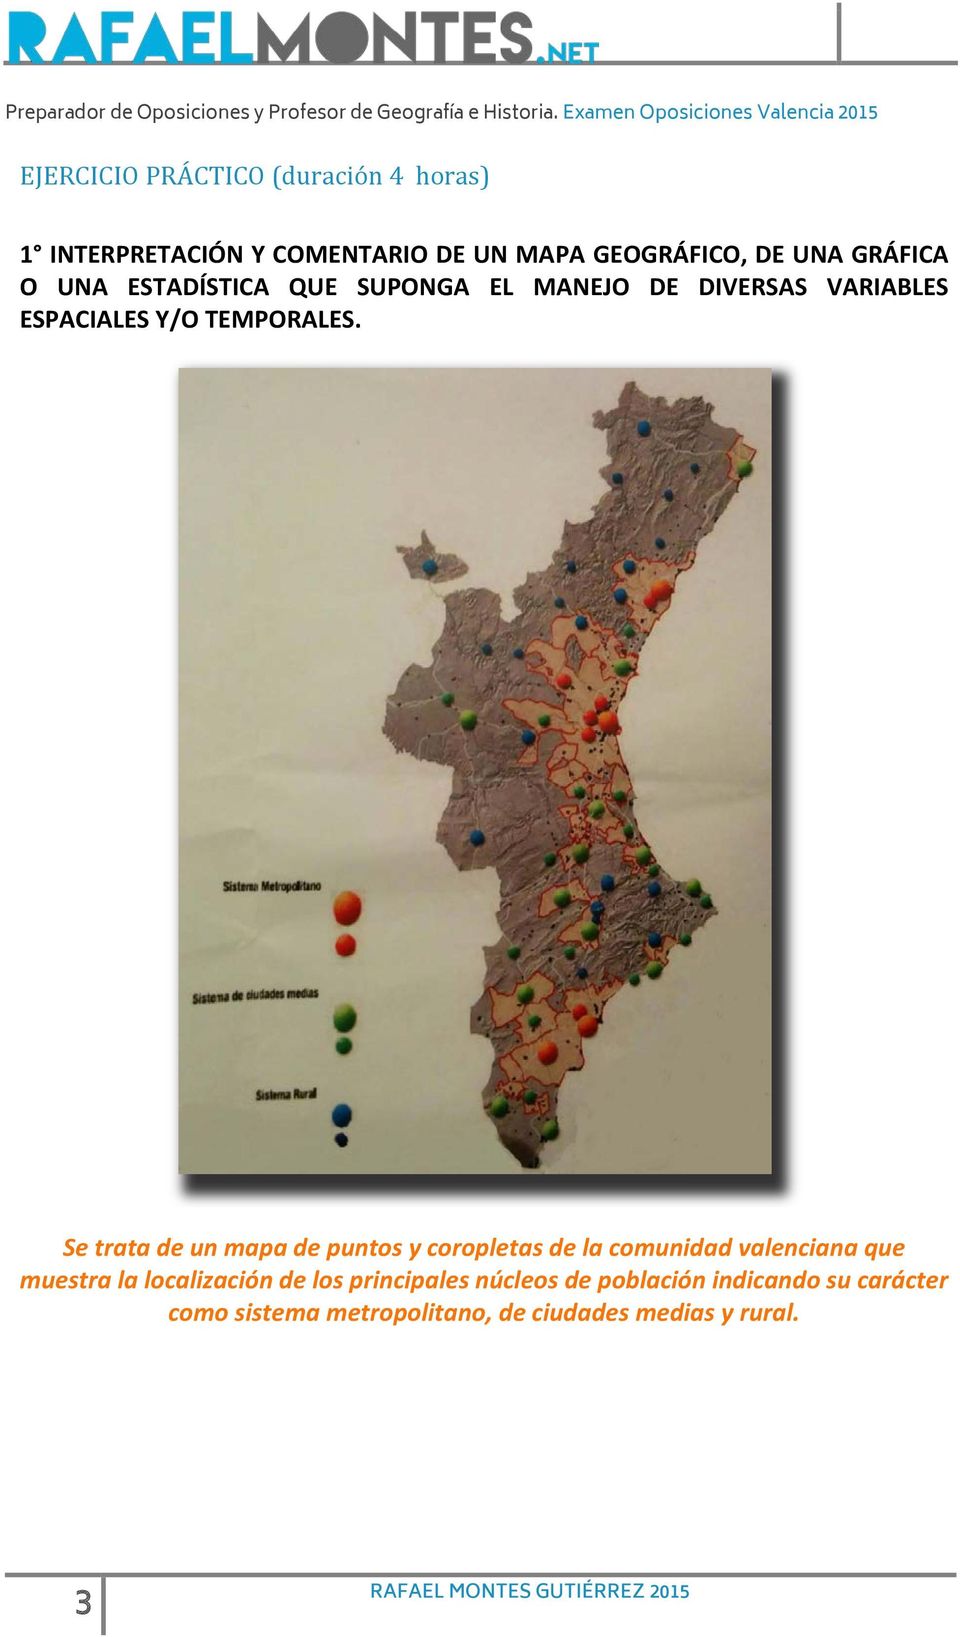 Se trata de un mapa de puntos y coropletas de la comunidad valenciana que muestra la localización de